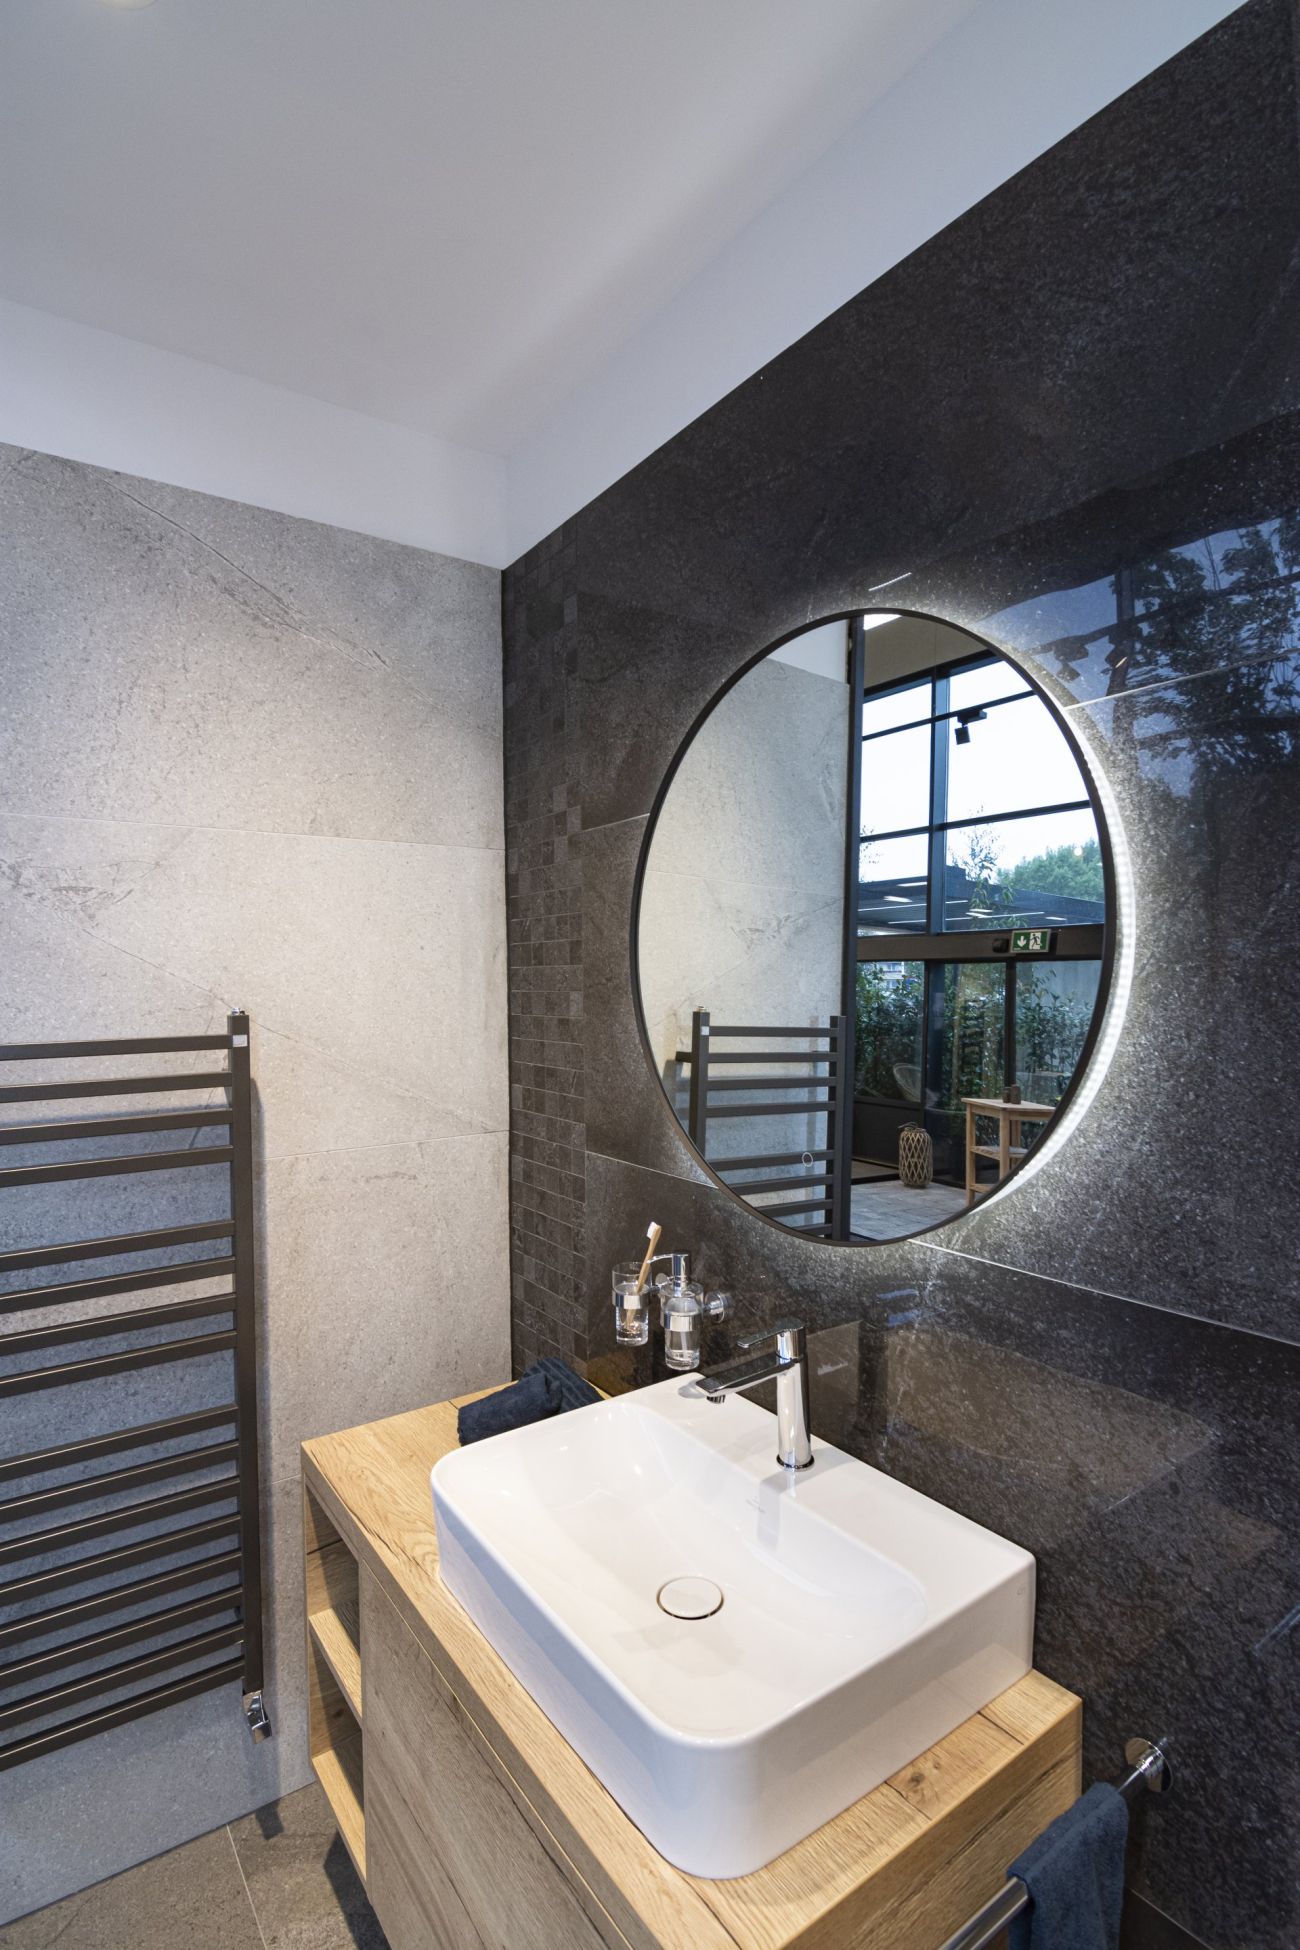 Vzorová koupelna s elegantním kruhovým zrcadlem a sanitou